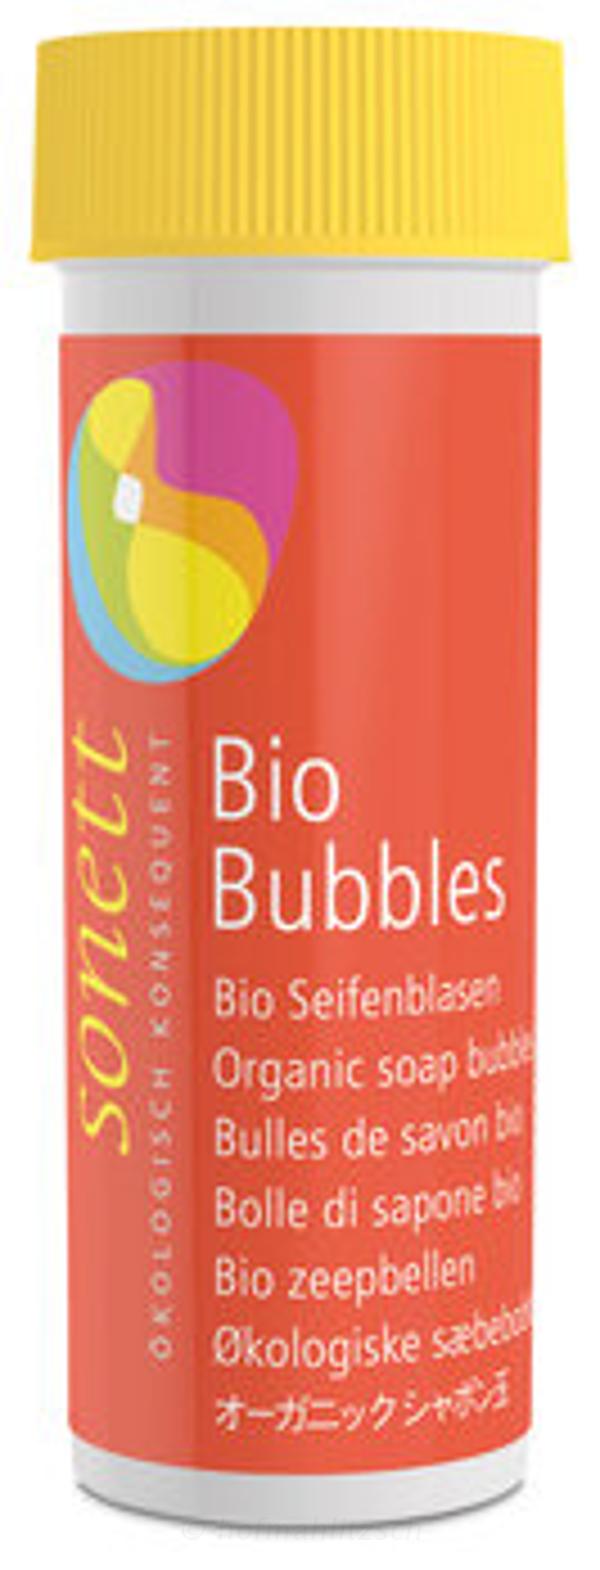 Produktfoto zu Bio-Seifenblasen